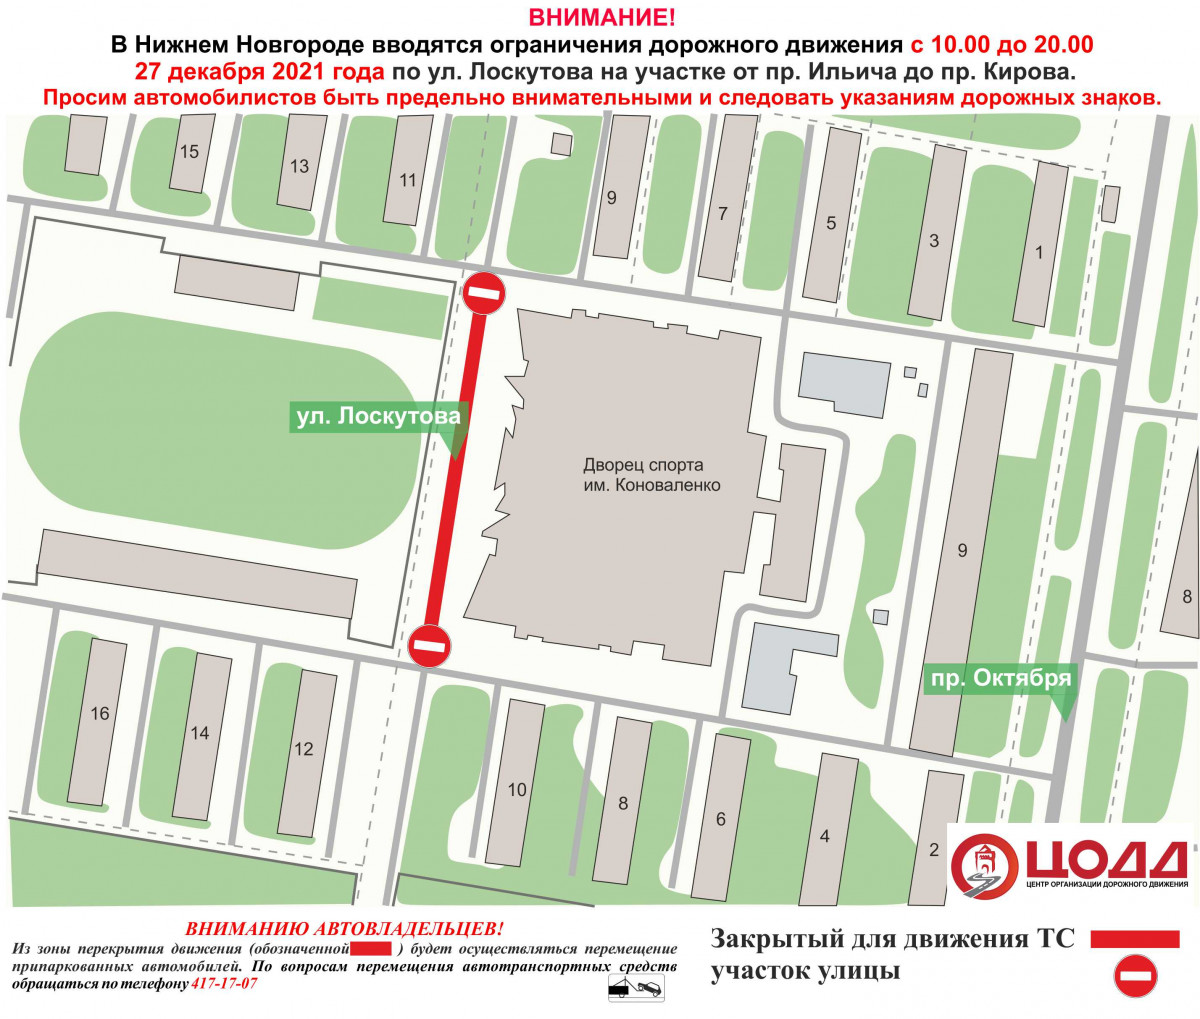 Движение приостановят на участке улицы Лоскутова 27 и 28 декабря